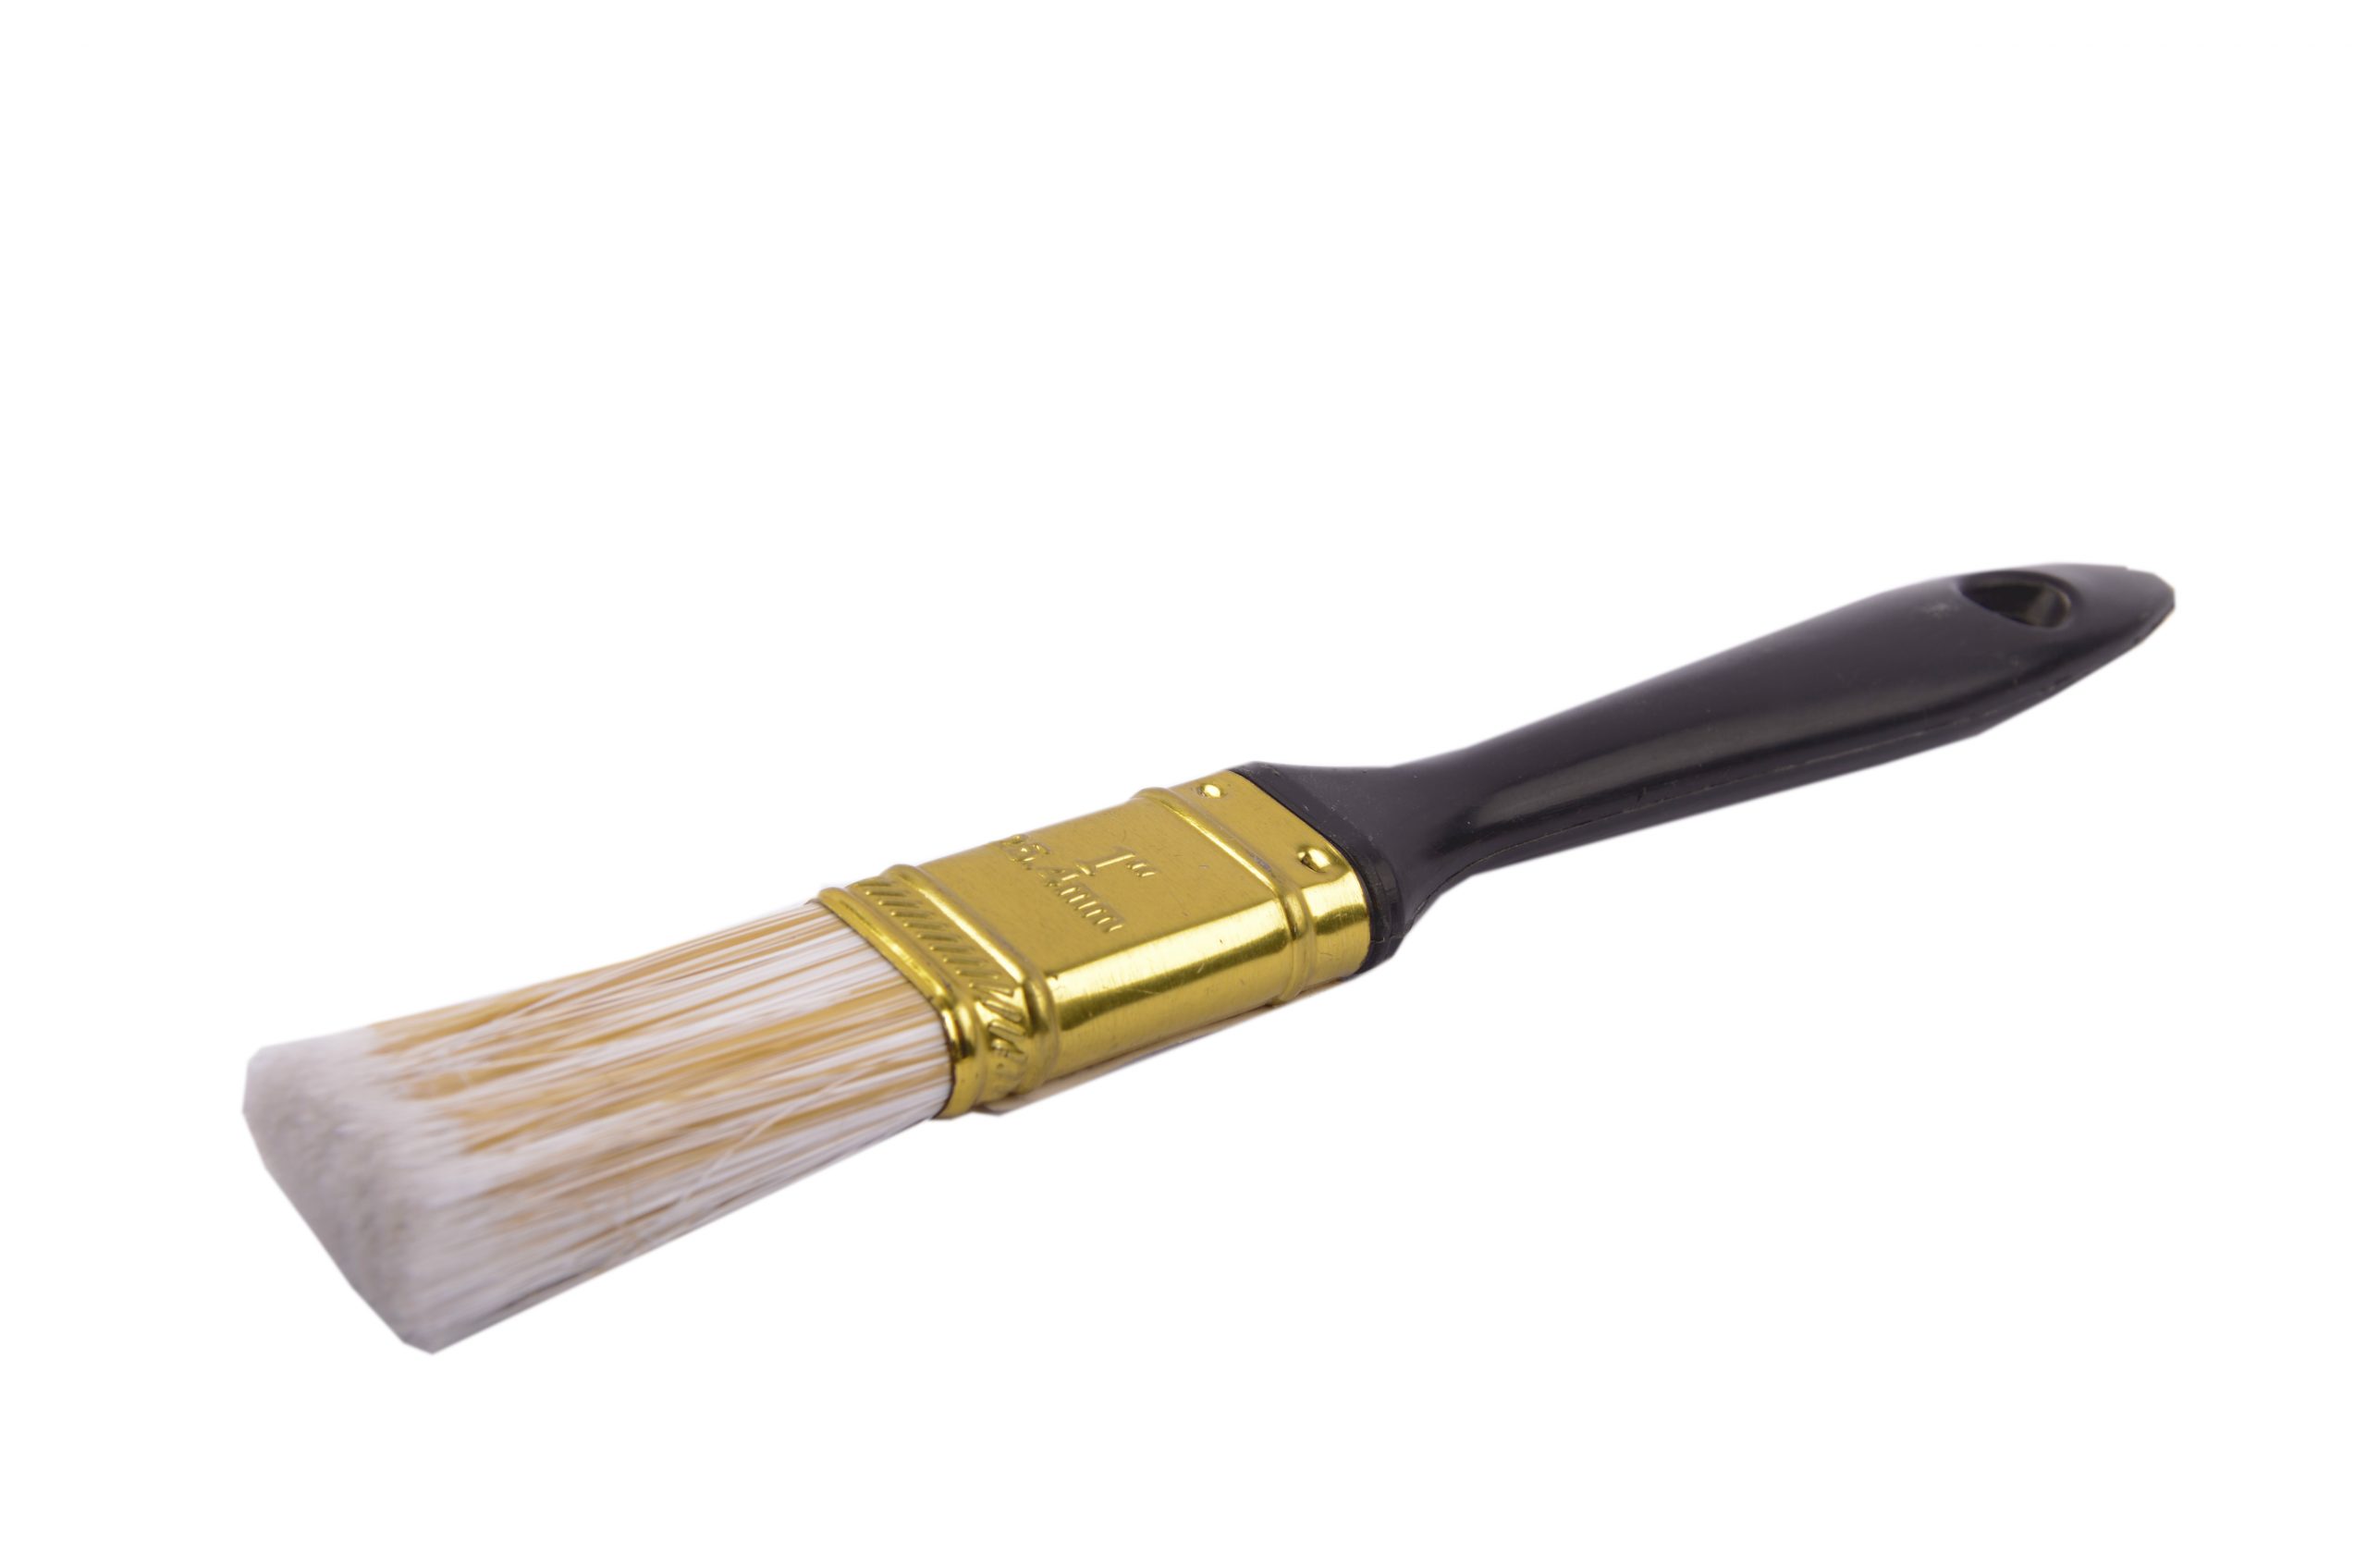 Paint Brush 1 inch - Bashiti Depot